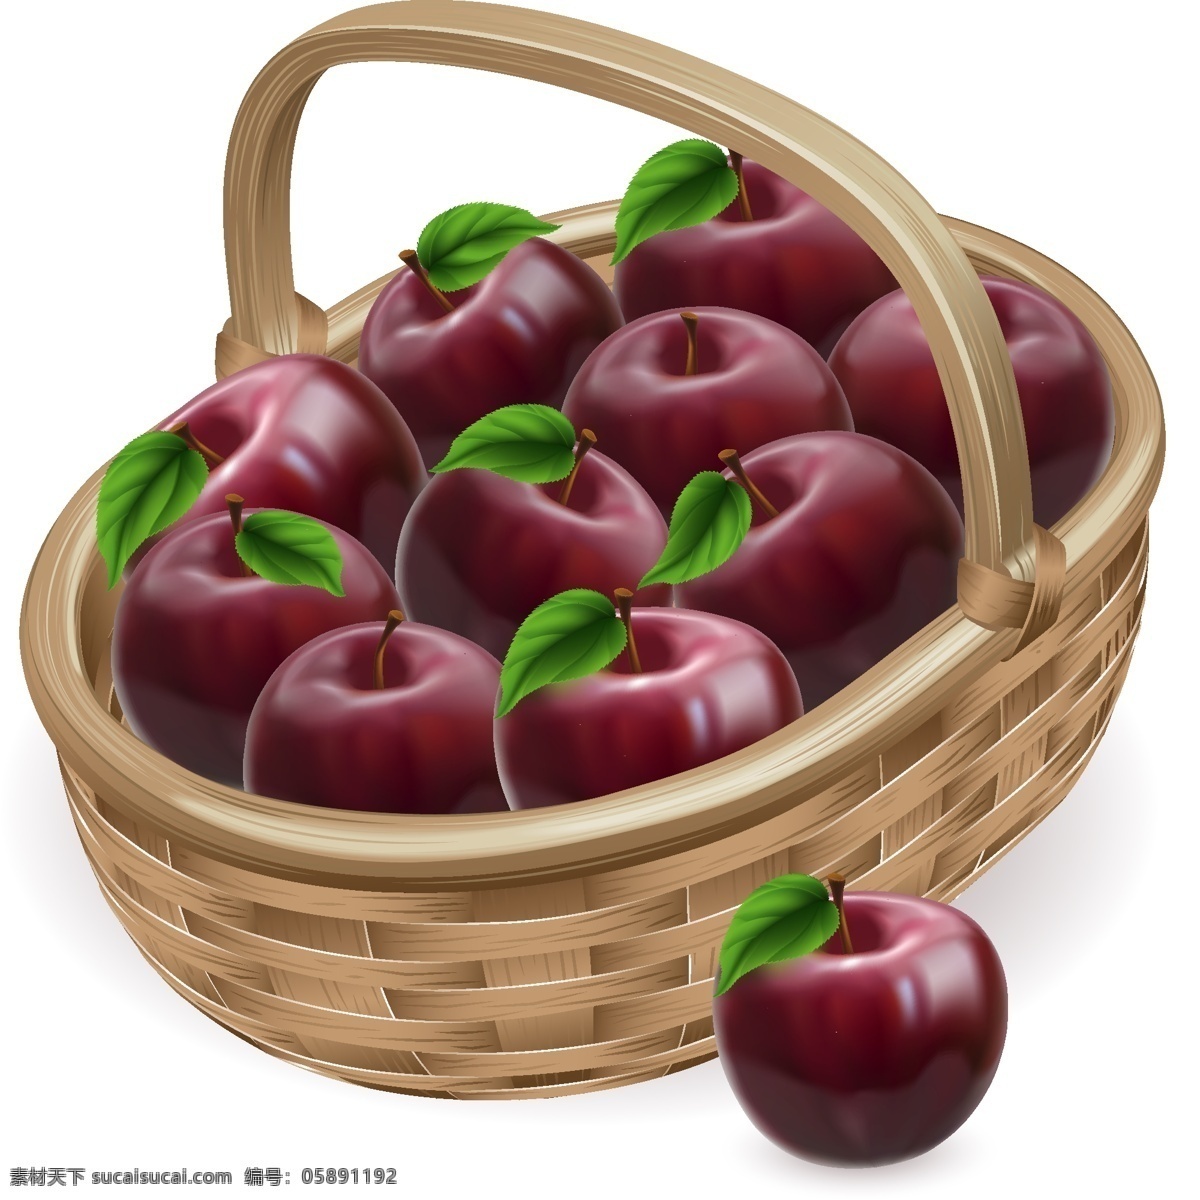 红苹果 设计素材 苹果 苹果素材 苹果设计 矢量苹果 矢量素材 水果 水果素材 水果设计 果篮 餐饮美食 生活百科 白色